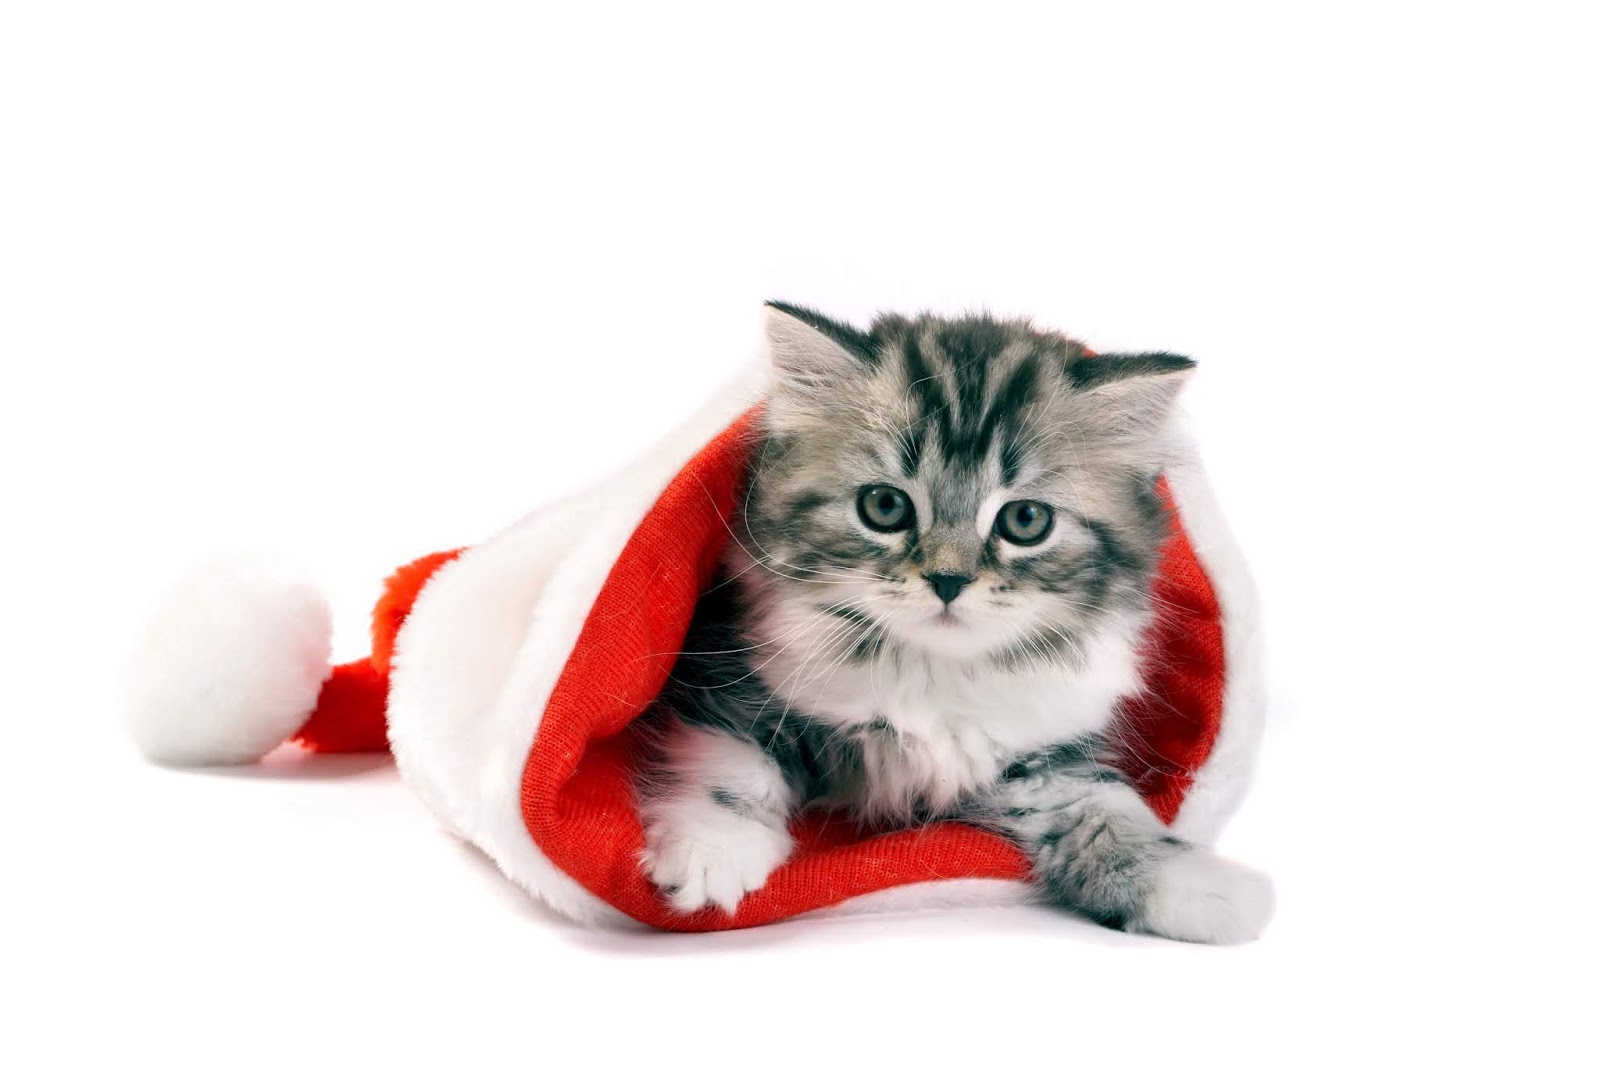 Hình ảnh chú mèo bên cây thông Noel đáng yêu